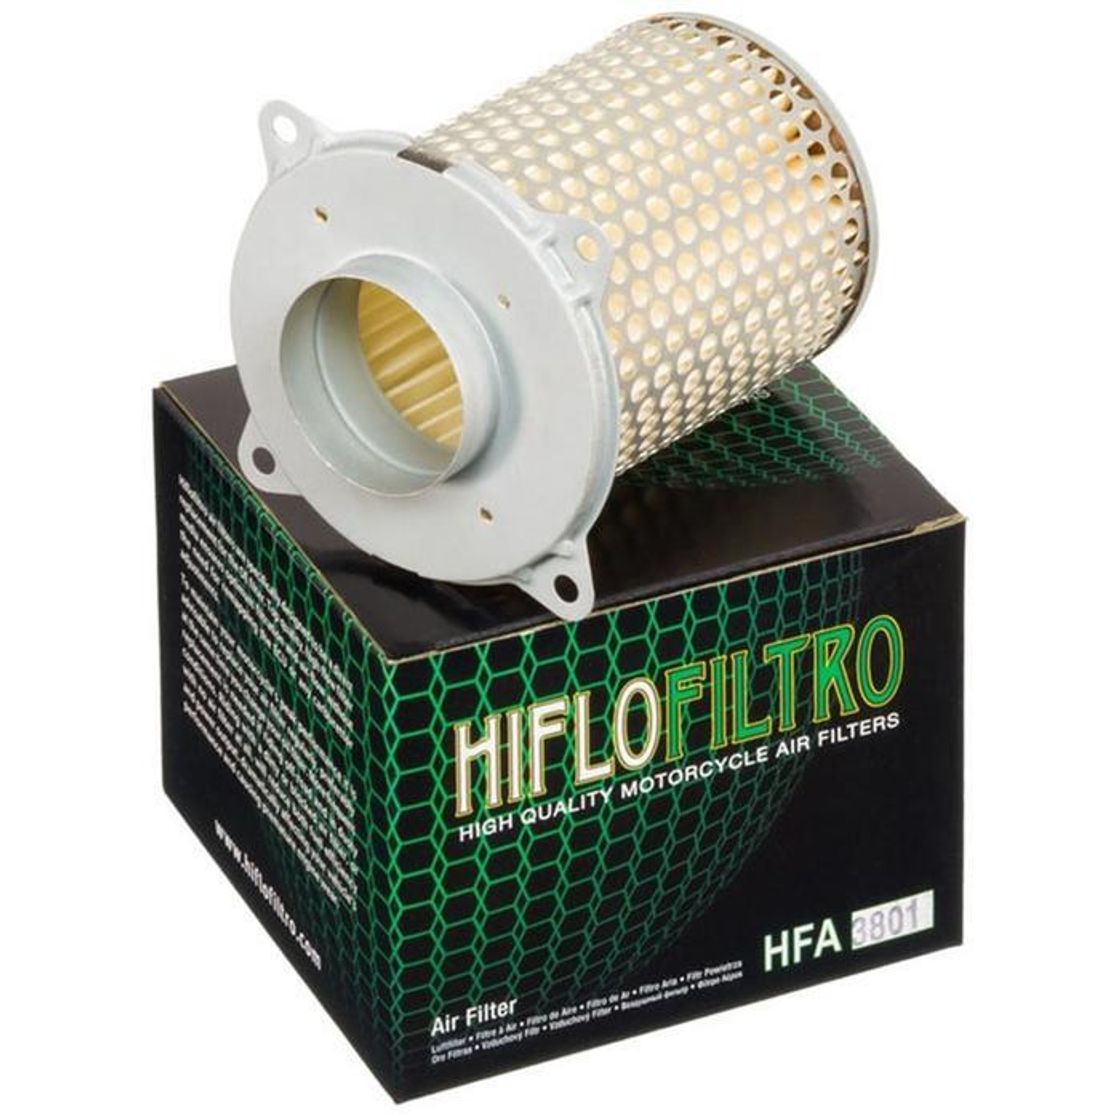 Фильтр воздушный HFA 4603 HIFLO. Воздушный фильтр HIFLO hfa1618. Воздушный фильтр HIFLO hfa4607. Воздушный фильтр HIFLO hfa3911. Воздушные фильтры hiflo